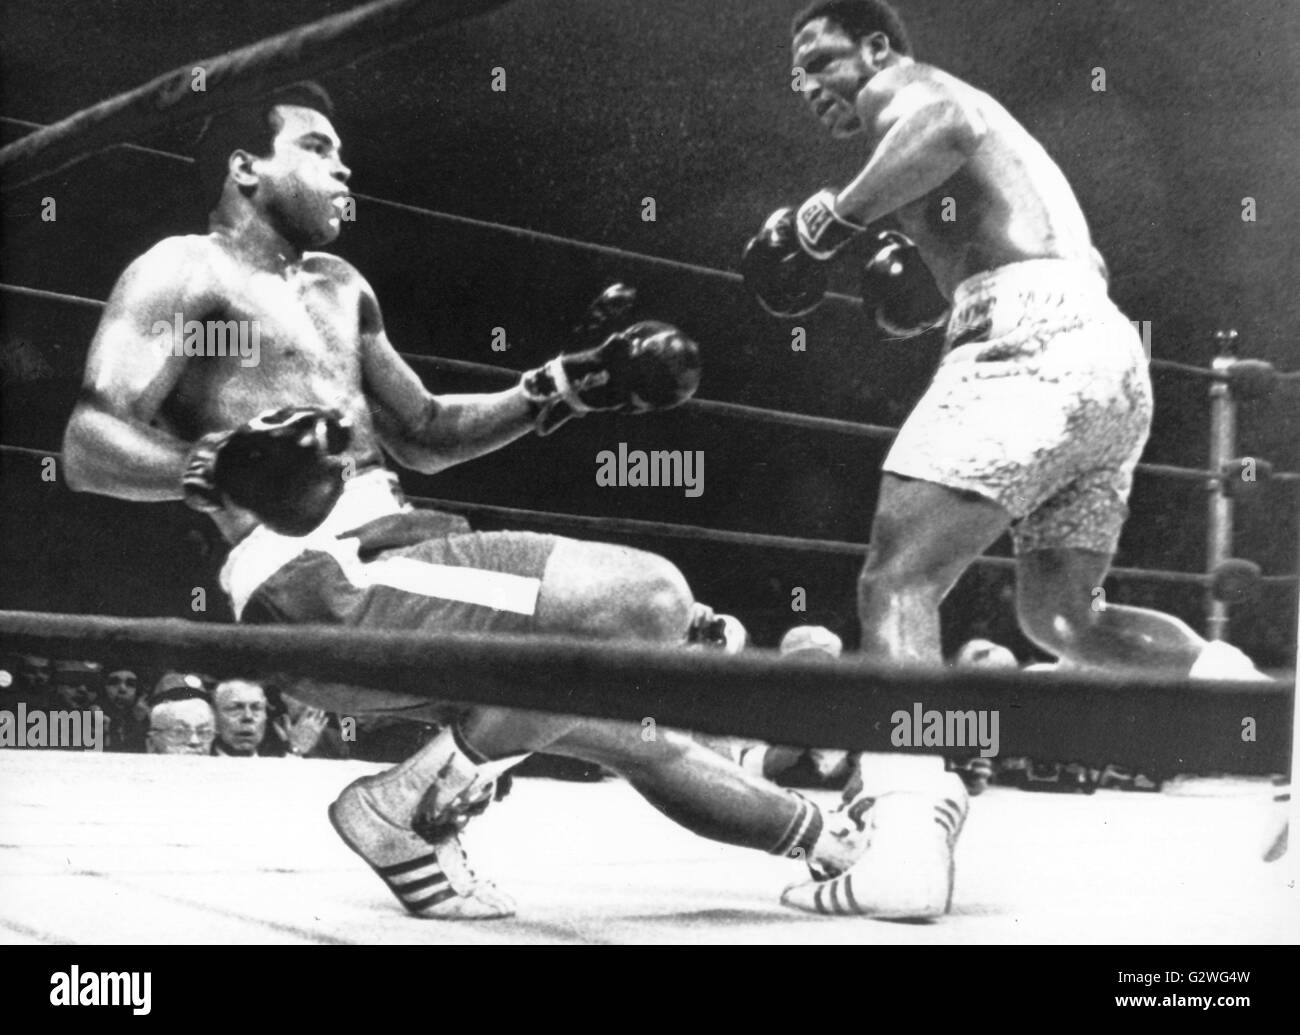 FILE - un file immagine datata 08 marzo 1971 ci mostra a heavyweight boxer Muhammad Ali (L) essendo sbalzato fuori i suoi piedi dopo aver preso un colpo in testa al suo avversario Joe Frazier (R) durante il loro bout al Madison Square Garden di New York, Stati Uniti d'America. Nato Cassio argilla, boxe leggenda Muhammad Ali, soprannominato 'il più grande, ' morì il 03 giugno 2016 a Phoenix, Arizona, Stati Uniti d'America, all'età di 74, una famiglia portavoce ha detto. Foto: dpa Foto Stock